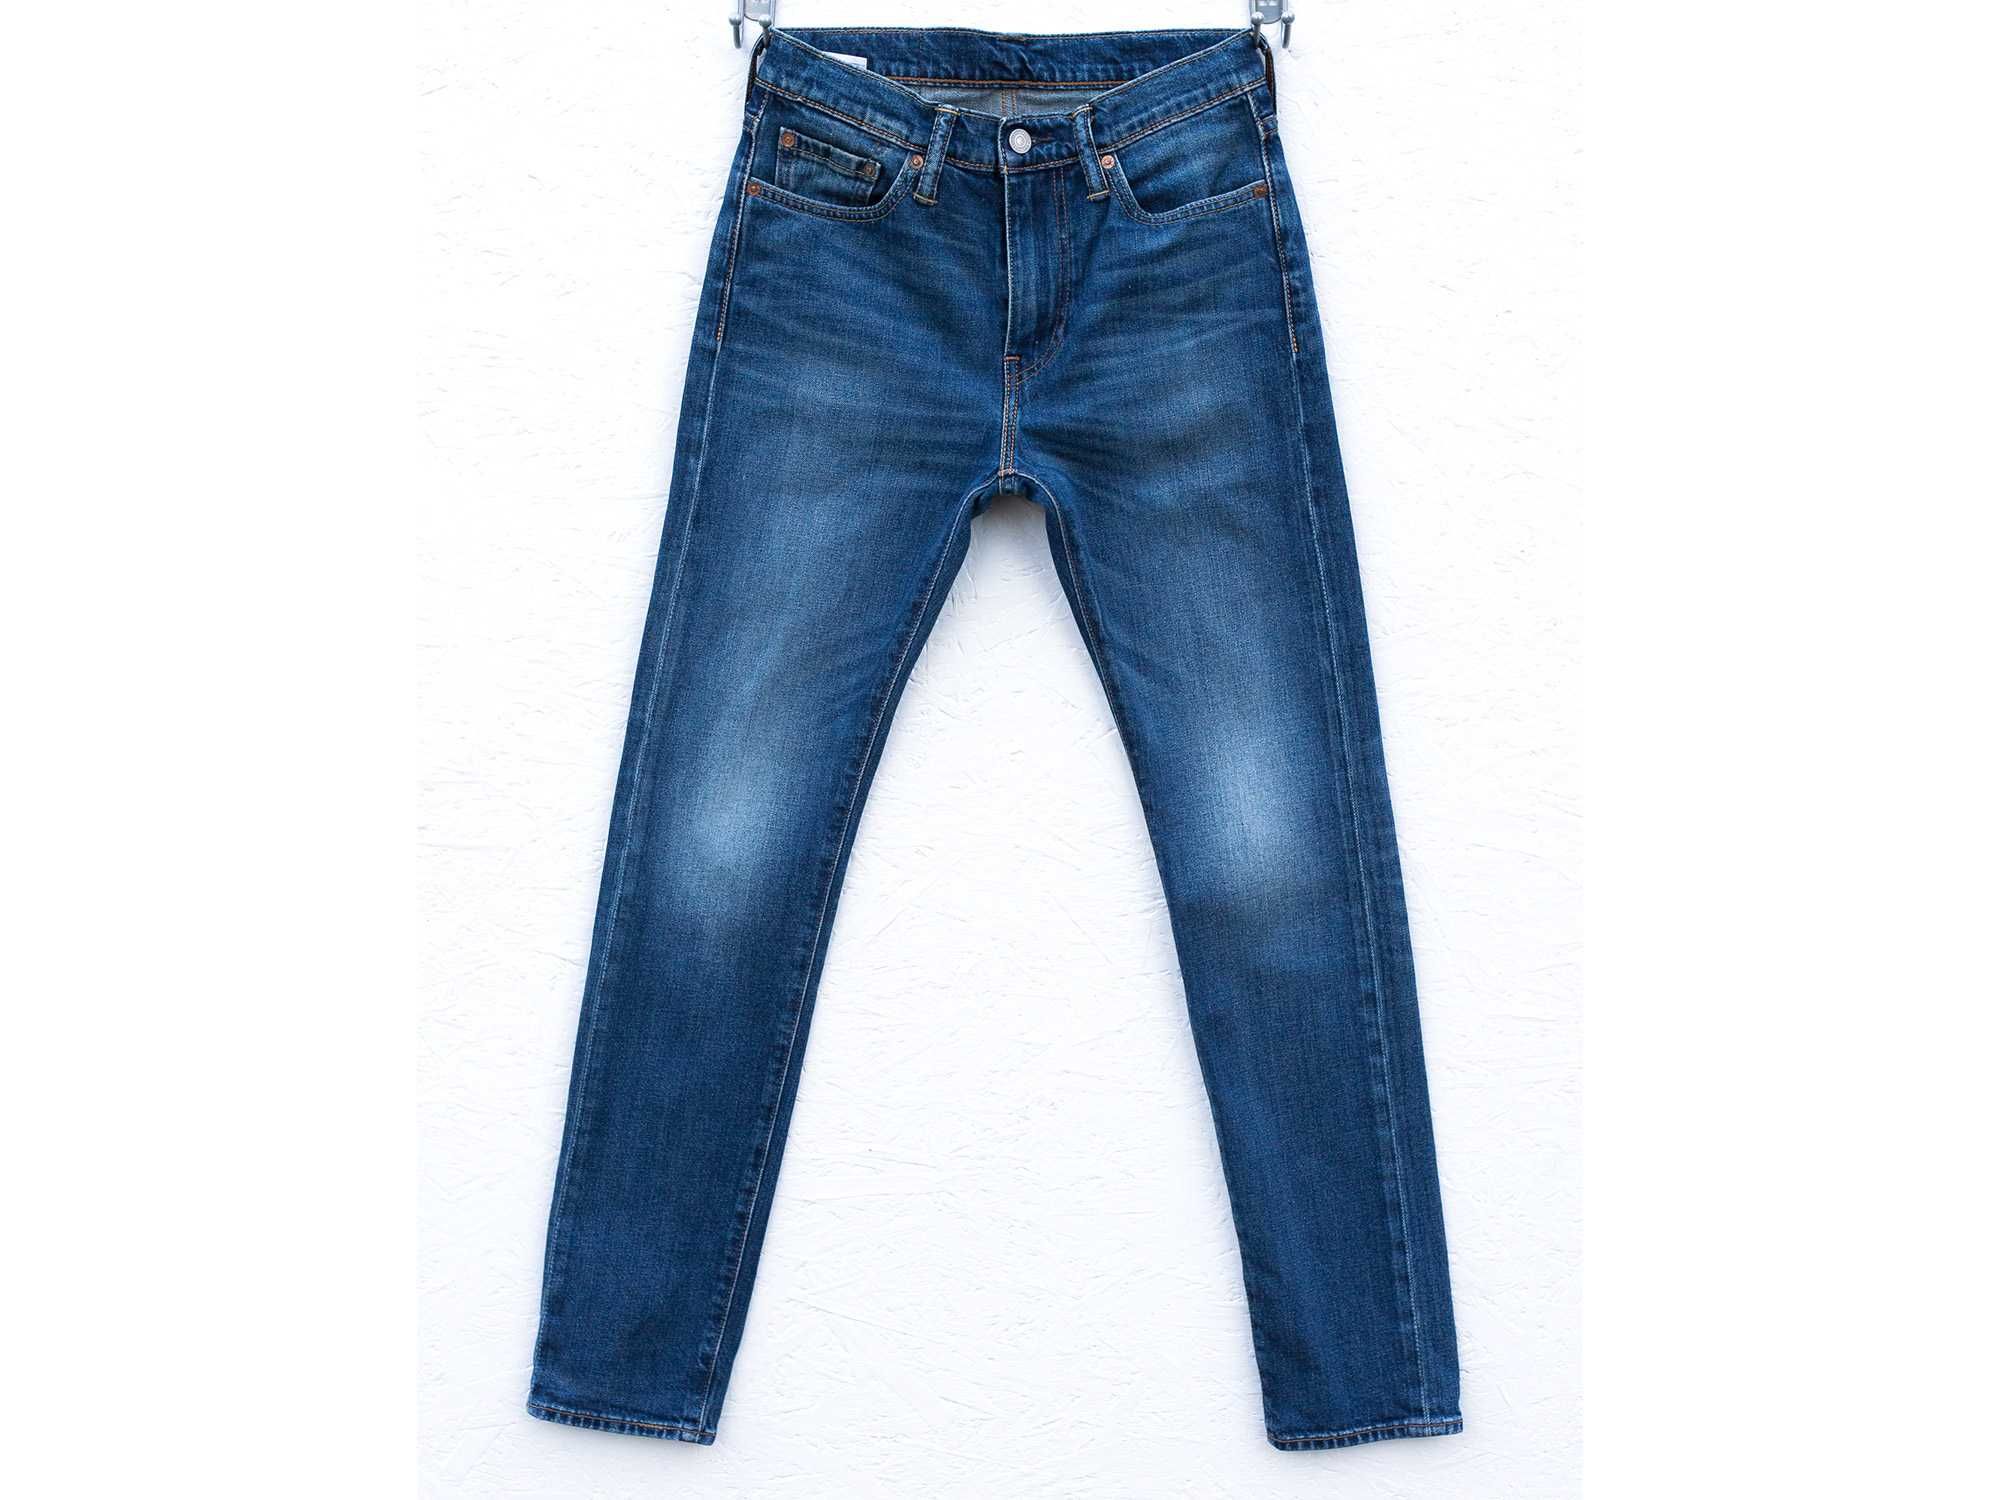 Spodnie jeansy Levi's 510 W29 L32 przecierane slim fit